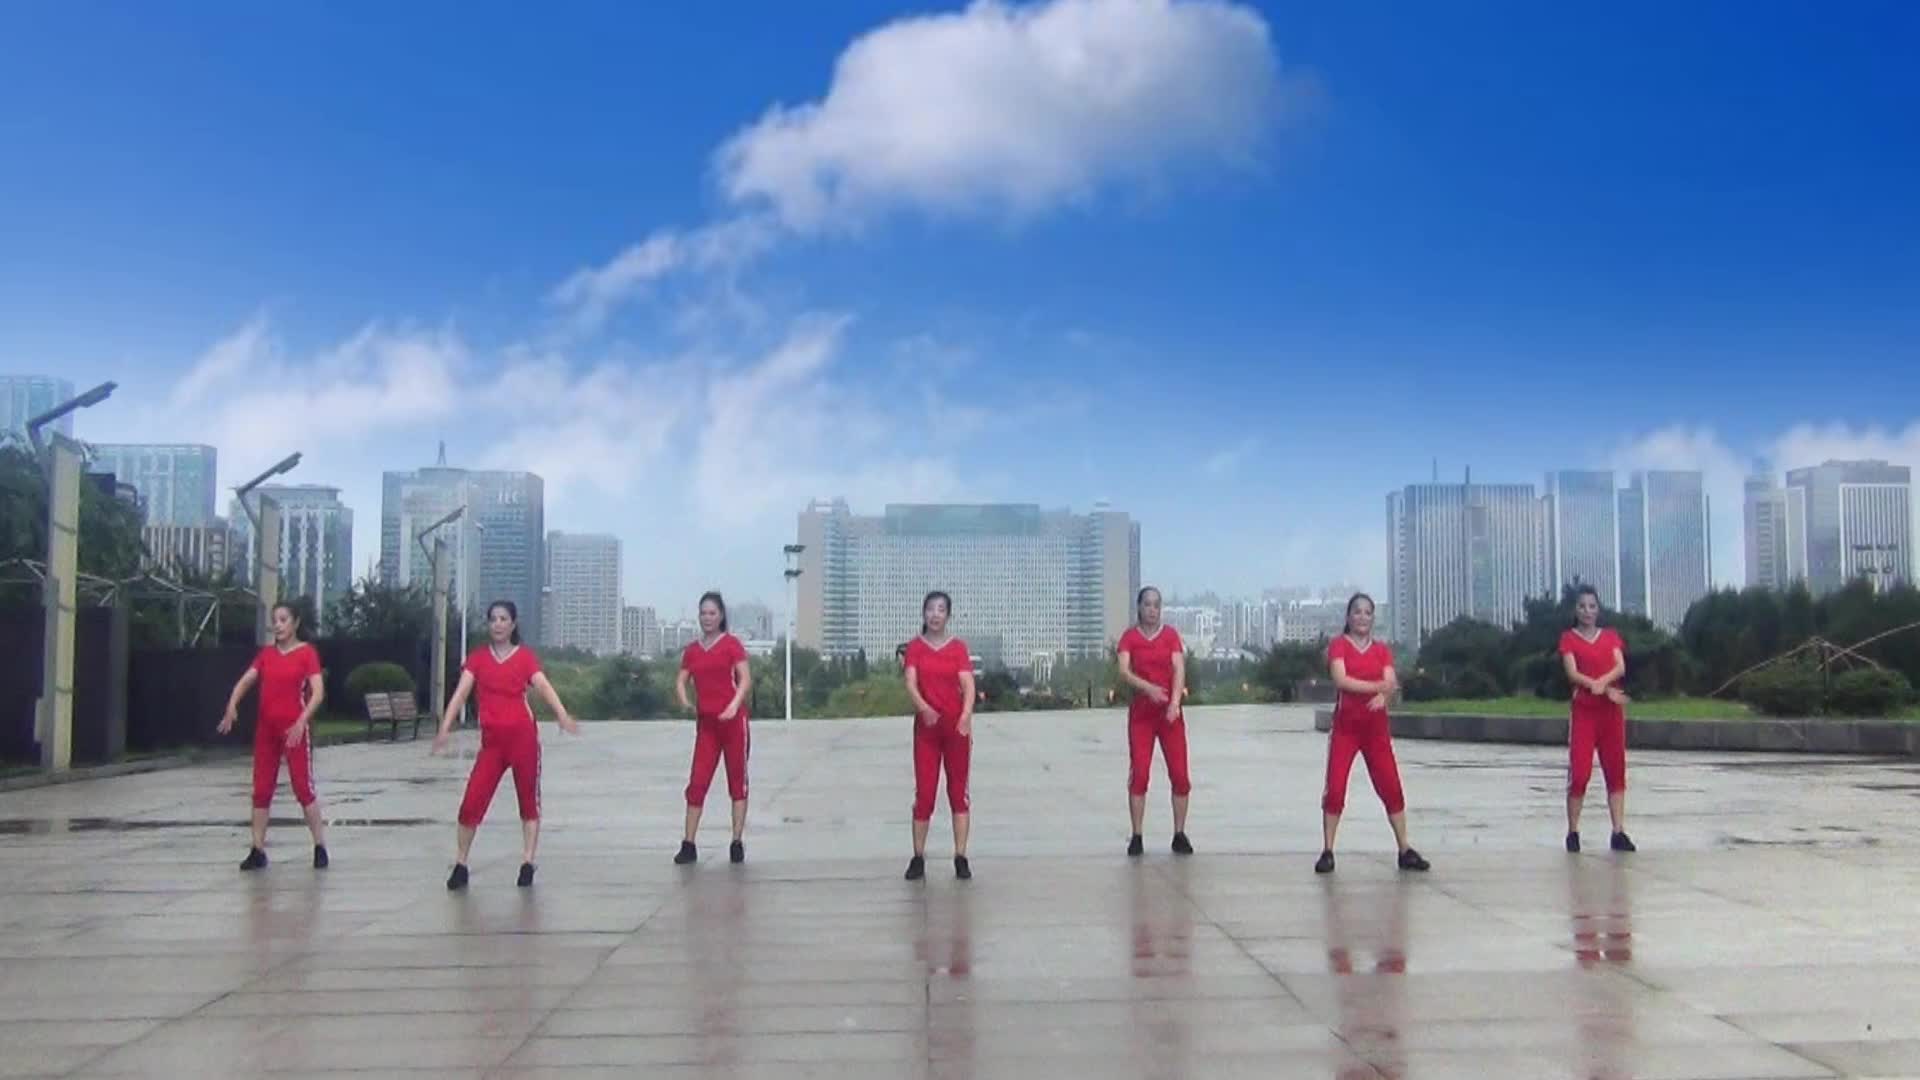 海棠依旧舞蹈队广场舞为爱远航-红衣版